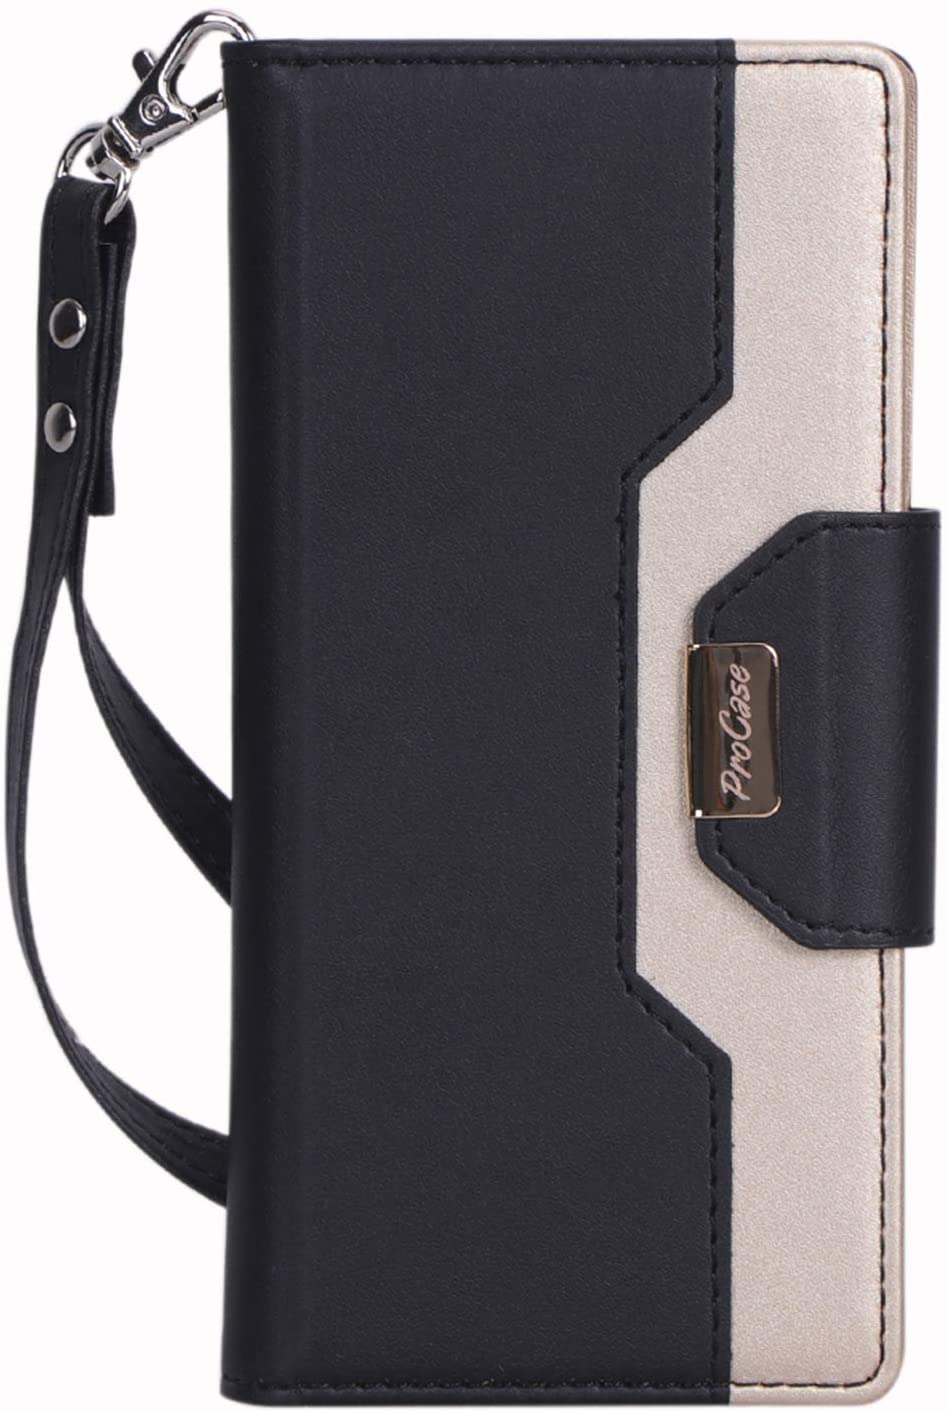 Procase leather wallet case for lg g7  h500 Black & Gold